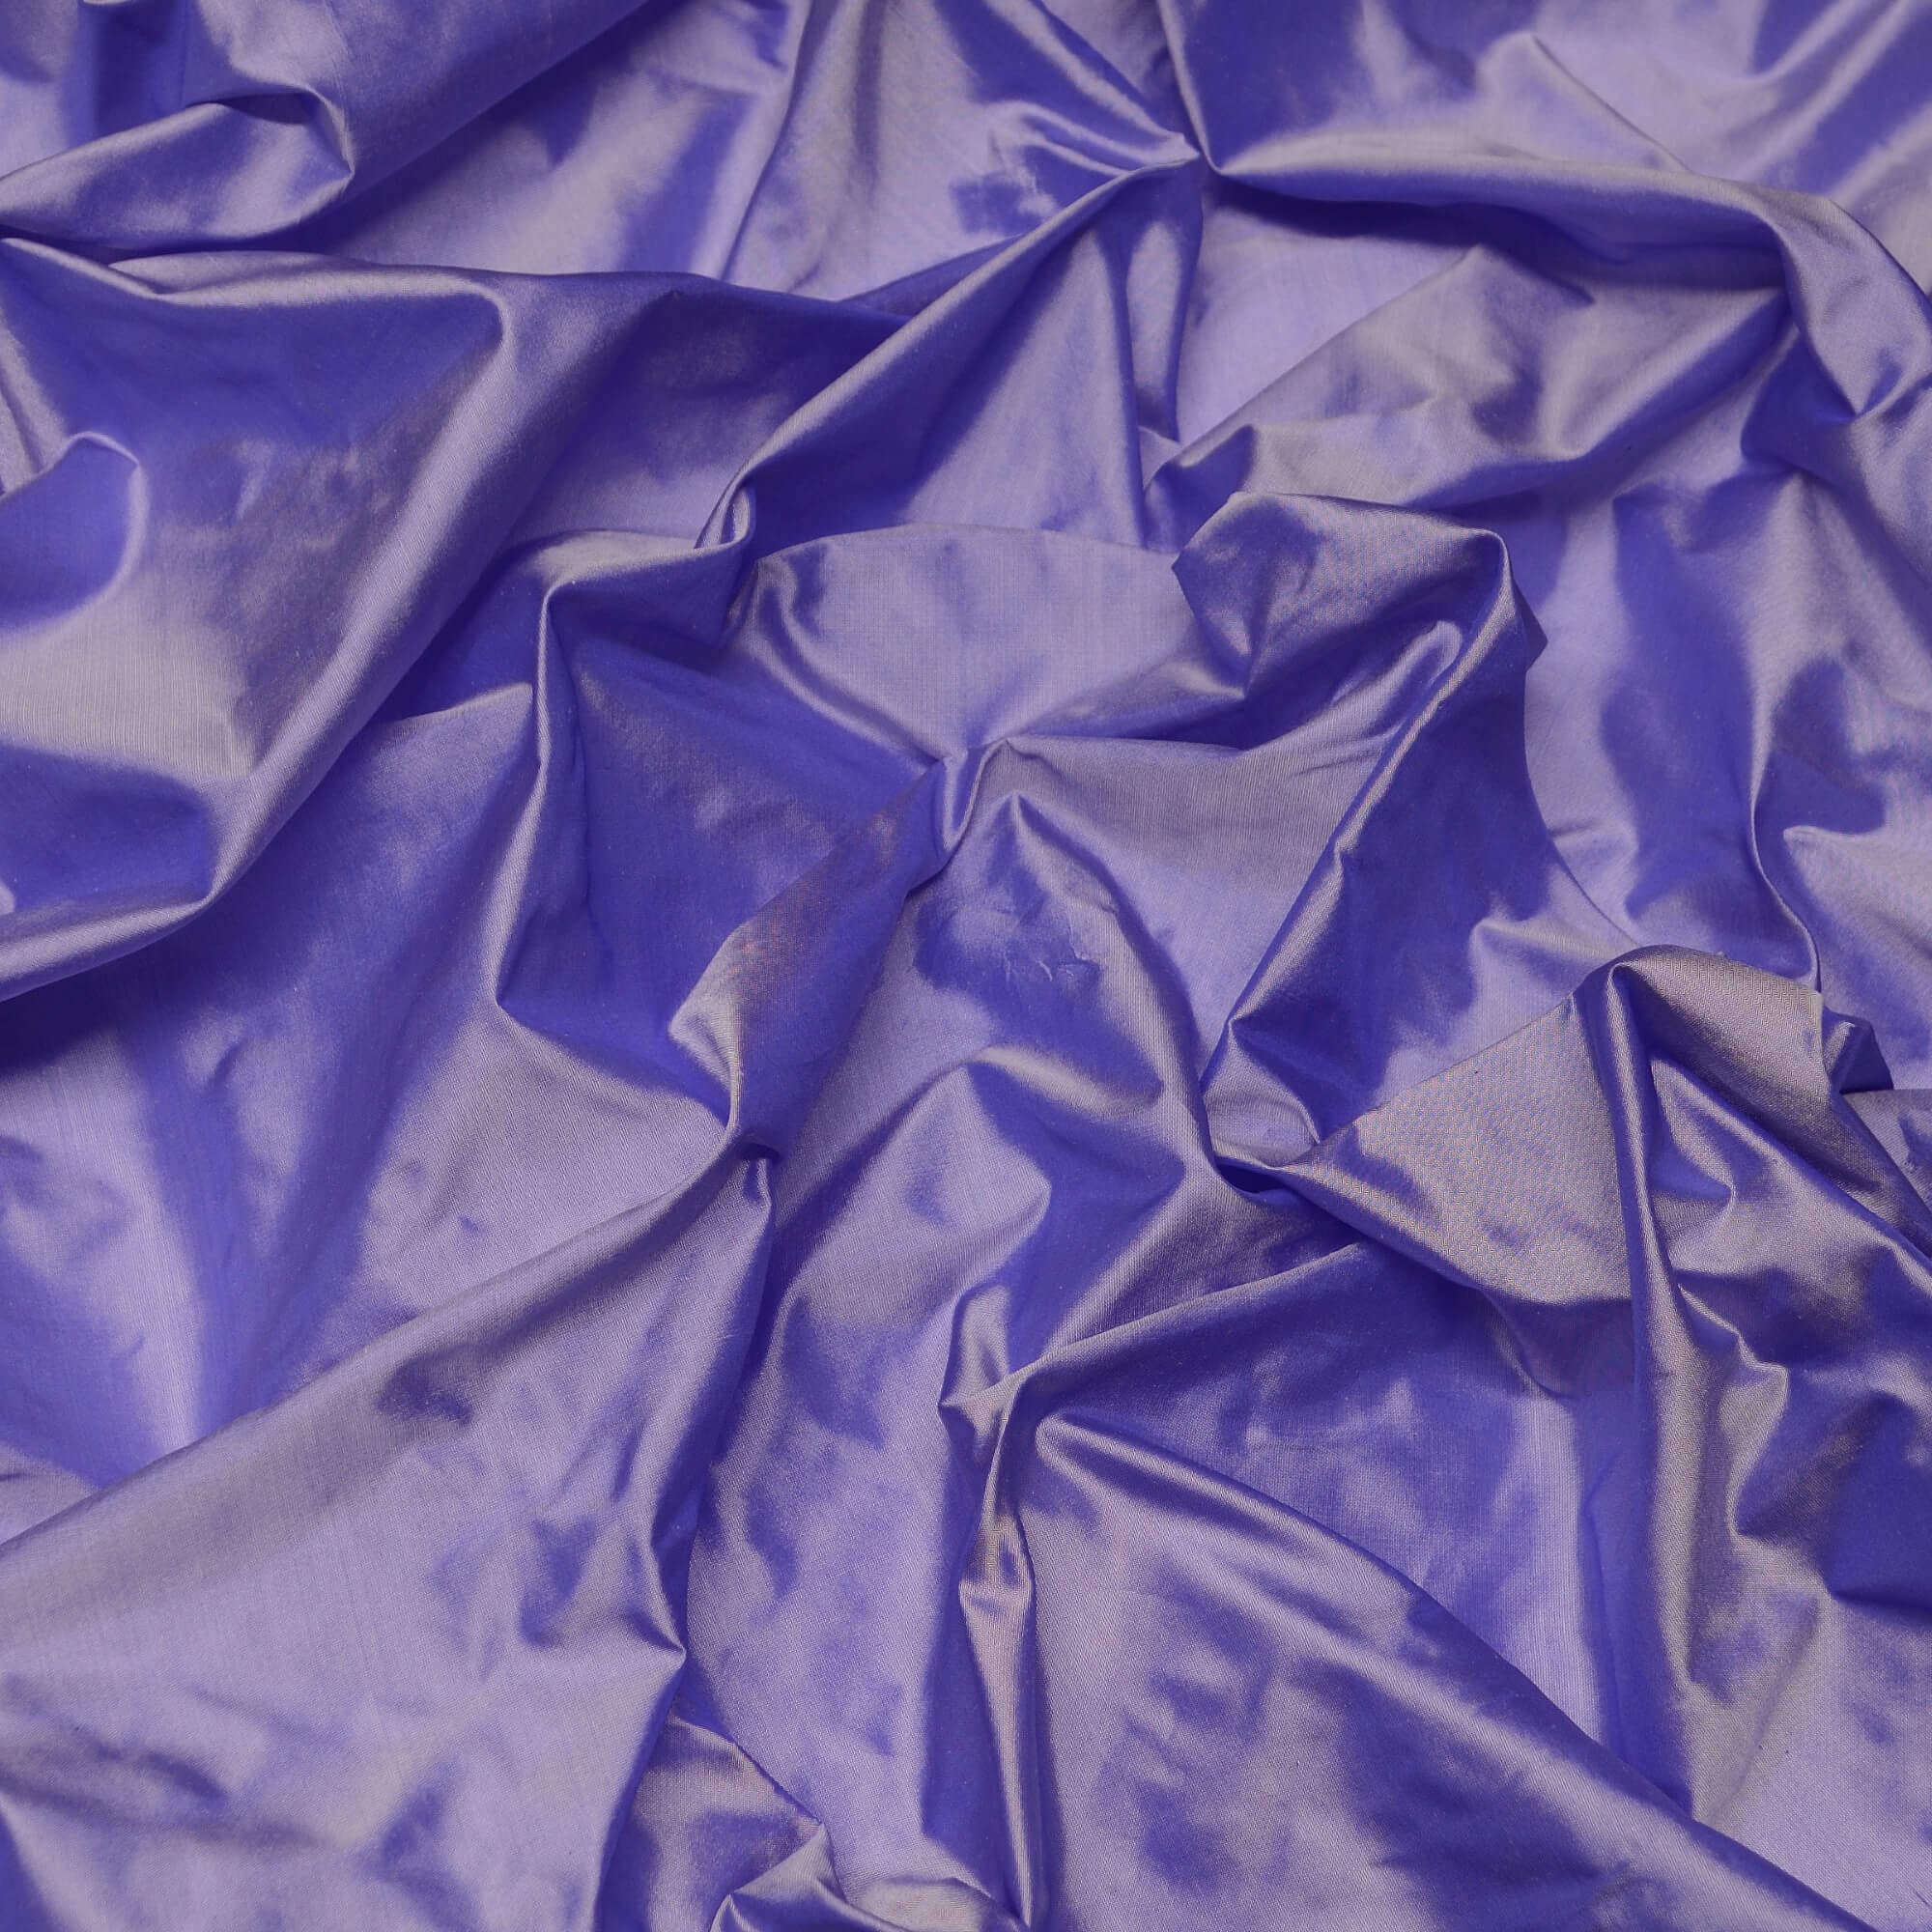 Burgundy Red Tissue Taffeta, 100% Silk Fabric By The Yard, 44 Wide  (TS-7305)